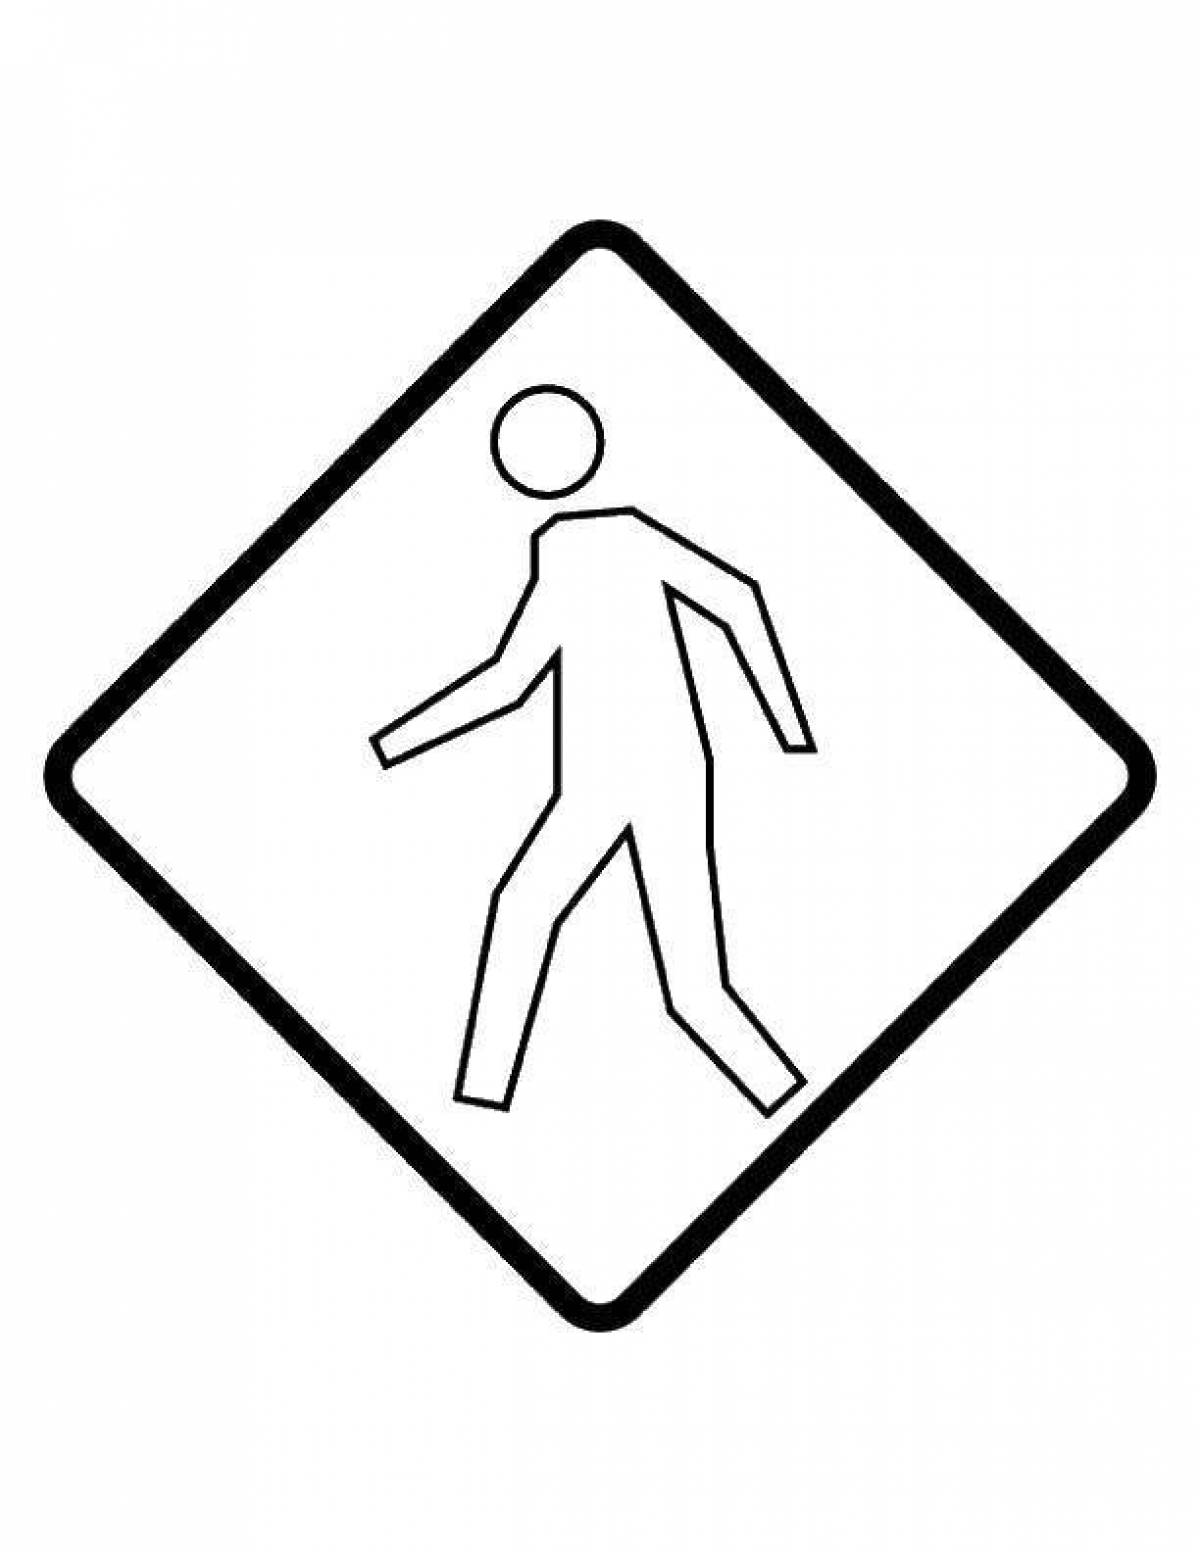 Раскраска жирный знак пешеходного перехода